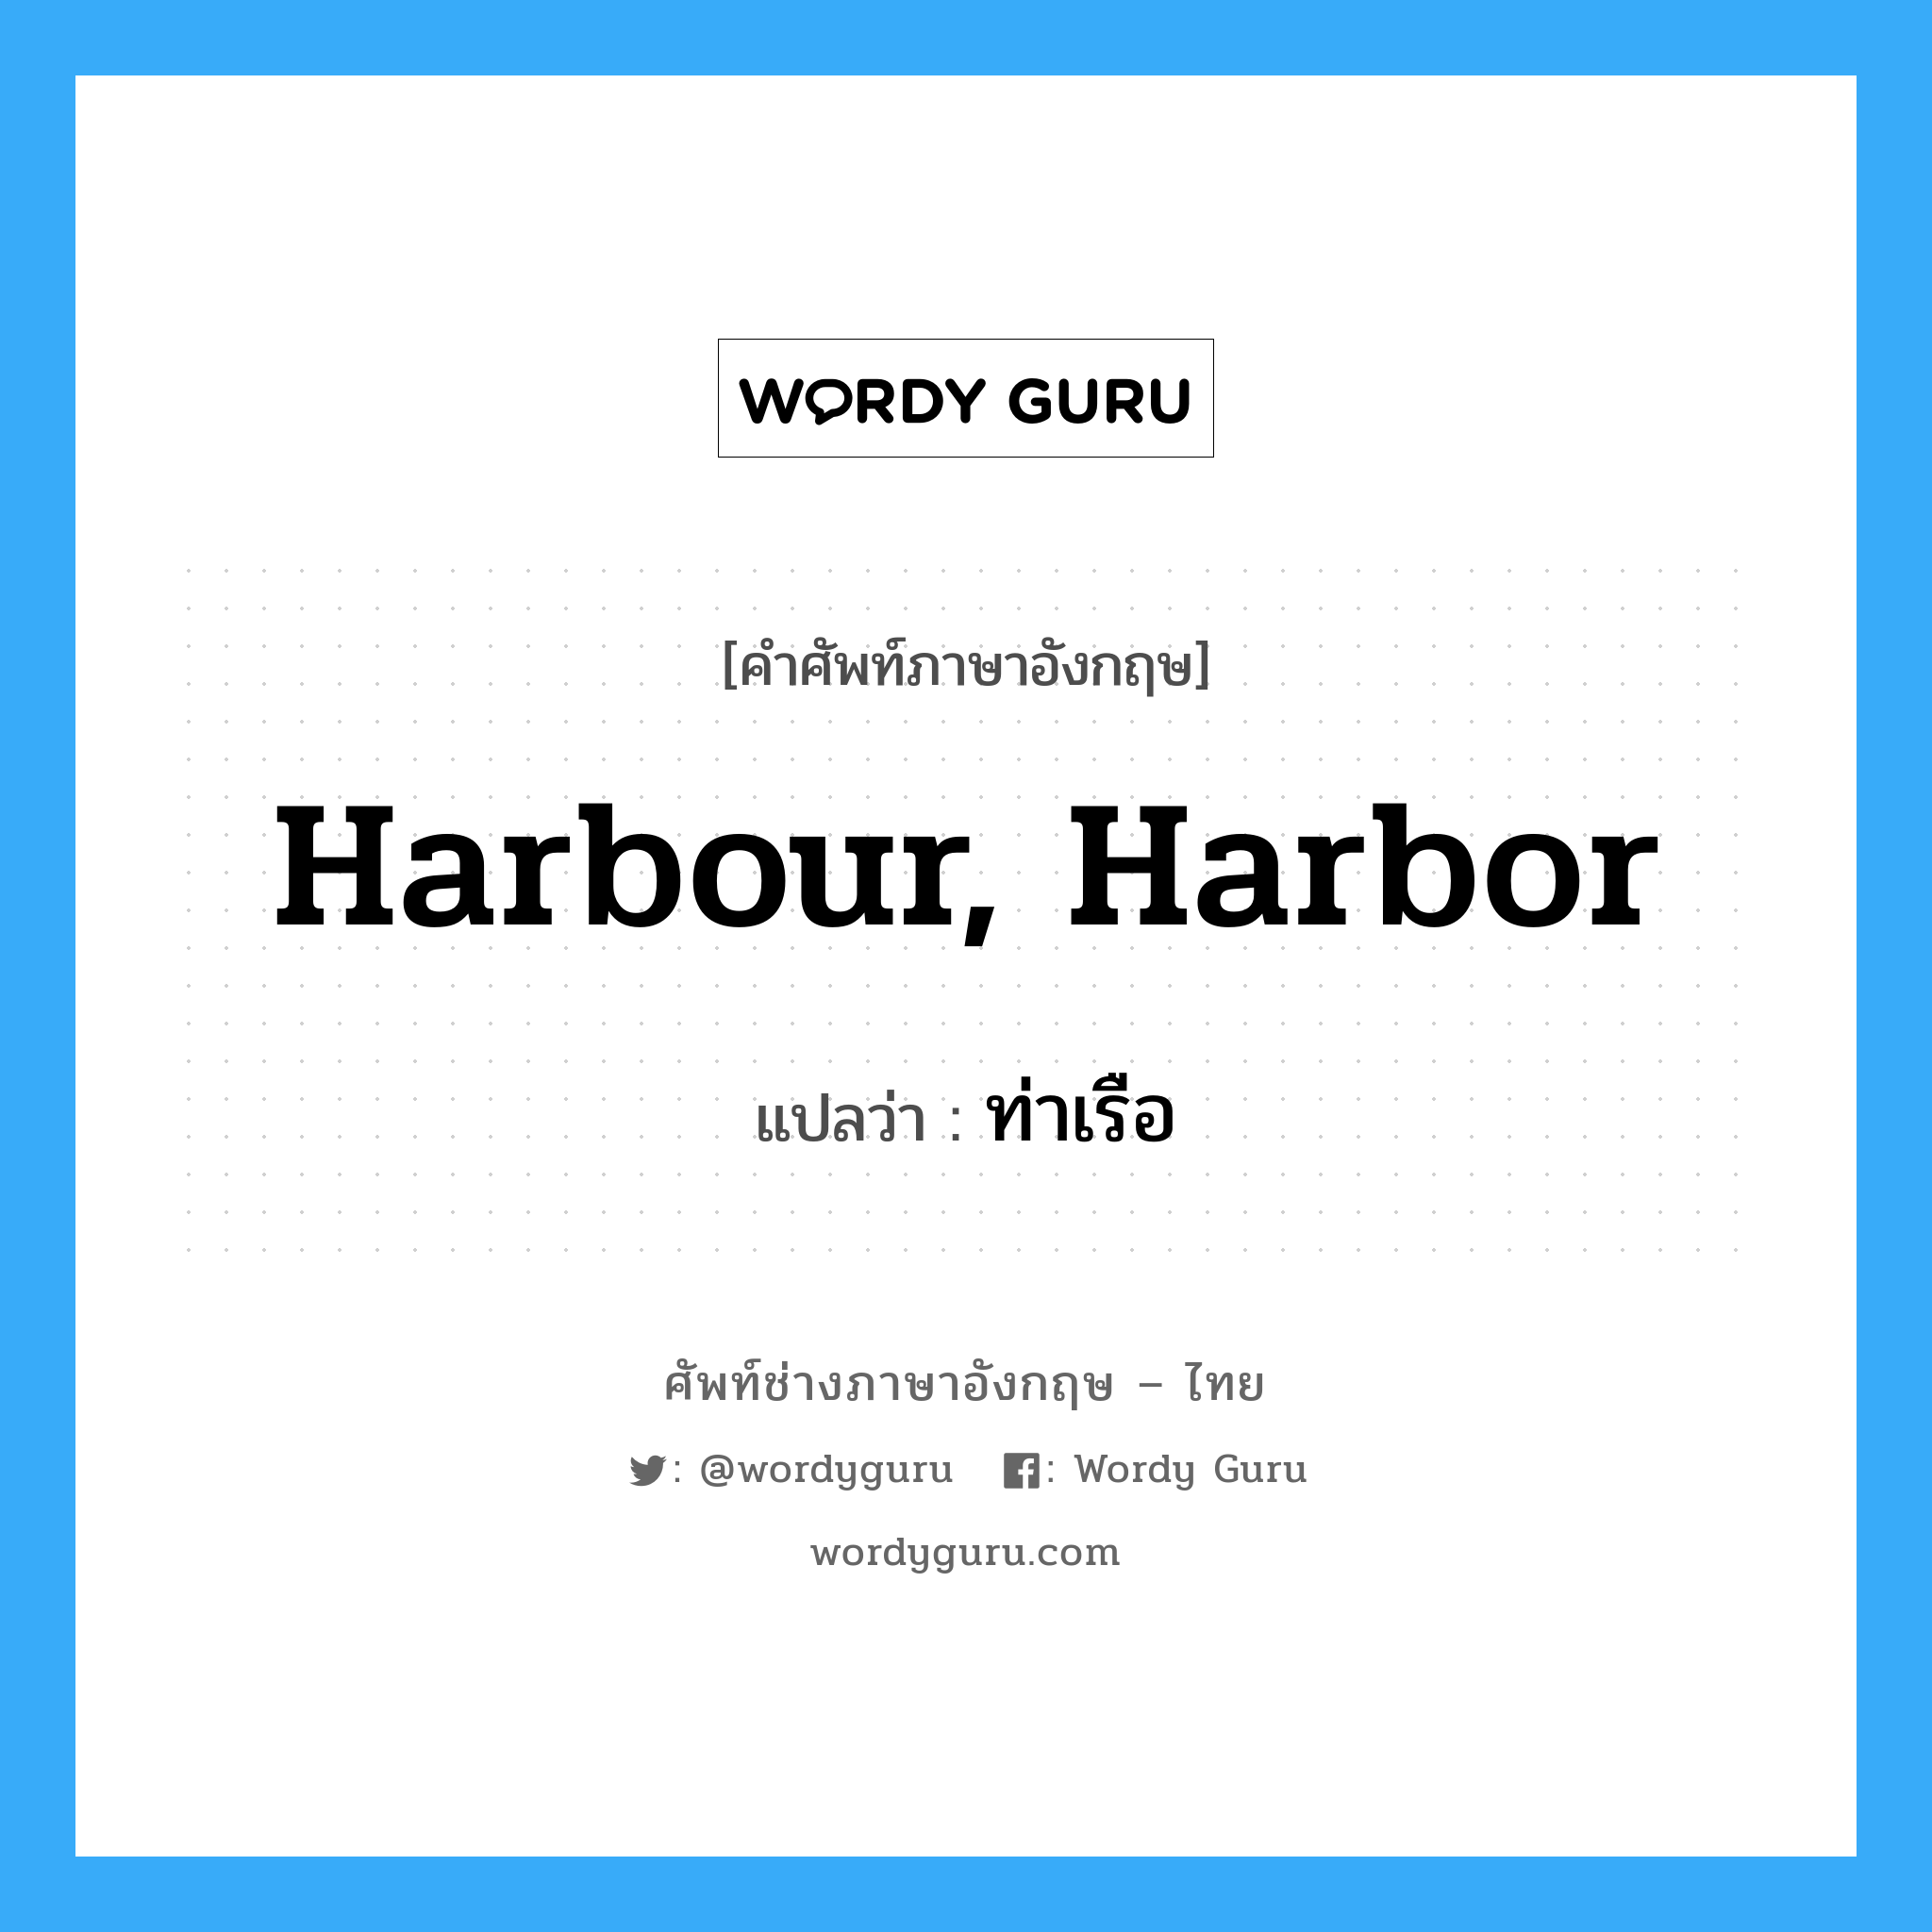 ท่าเรือ ภาษาอังกฤษ?, คำศัพท์ช่างภาษาอังกฤษ - ไทย ท่าเรือ คำศัพท์ภาษาอังกฤษ ท่าเรือ แปลว่า harbour, harbor